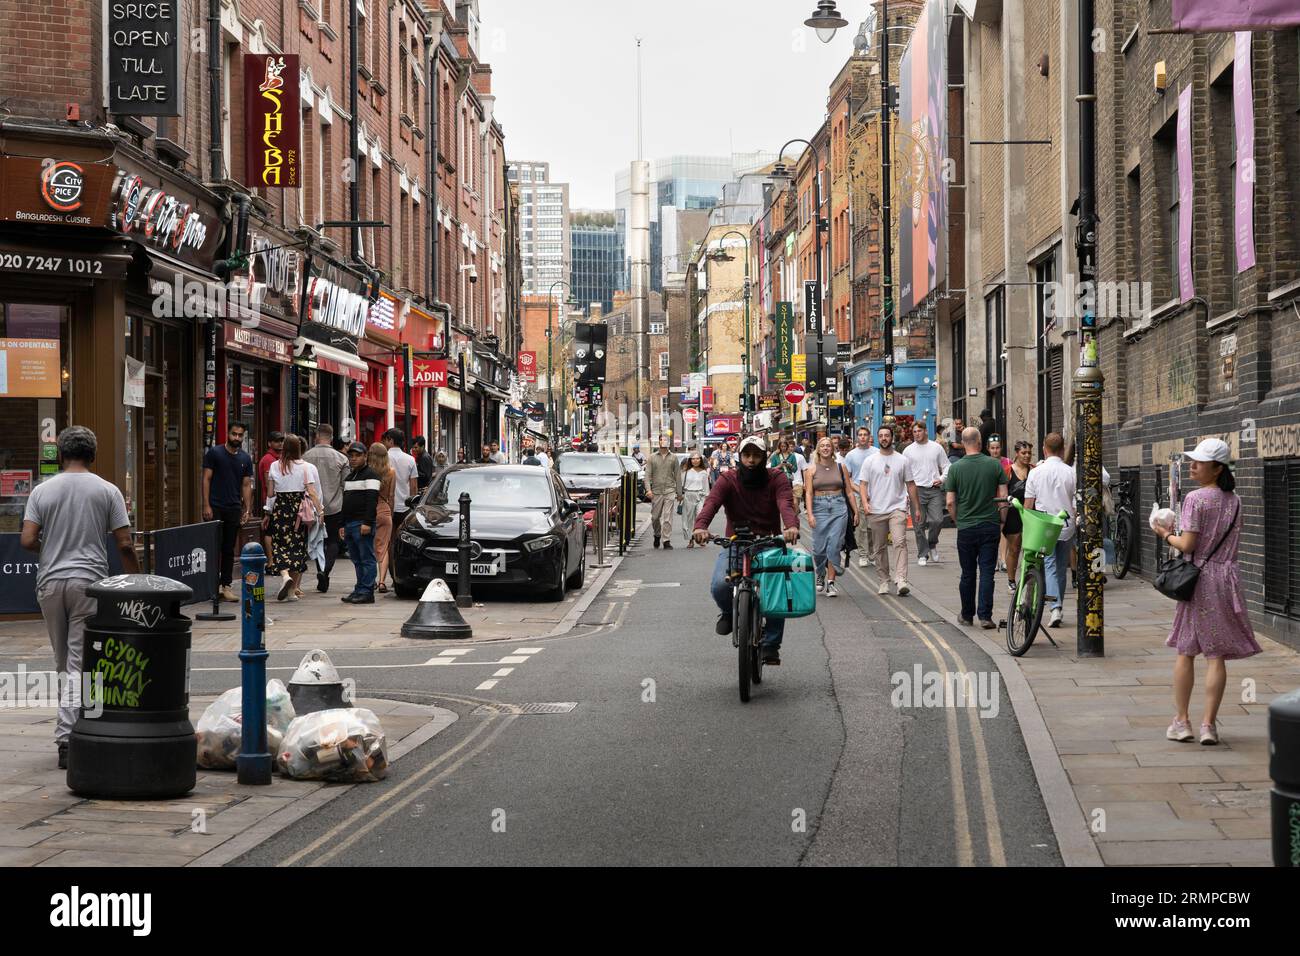 Die Brick Lane, eine berühmte Straße im East End von London und das Herz der bangladeschischen Gemeinde, ist für Spaziergänge und Radtouren bekannt. UK Stockfoto